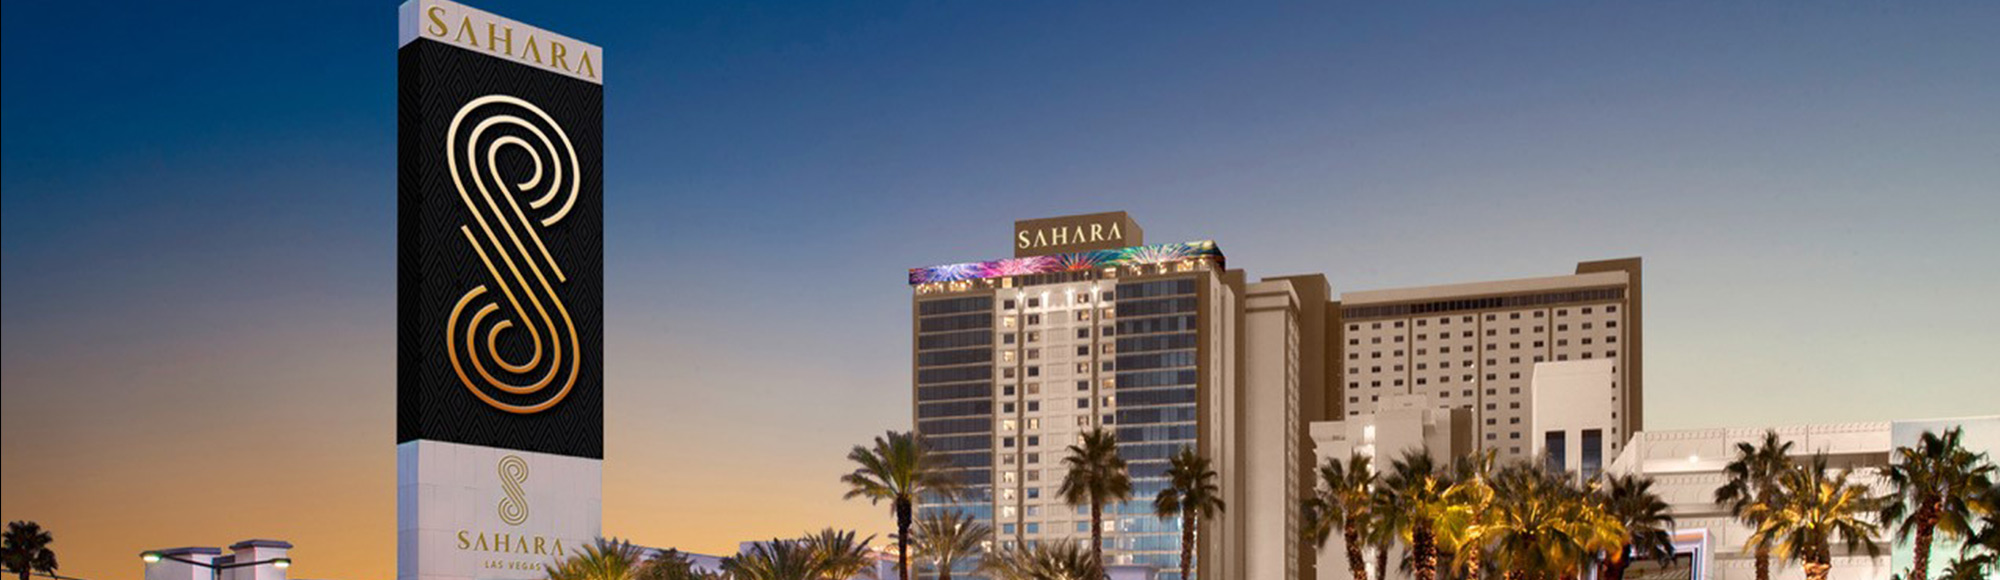 The Sahara Las Vegas